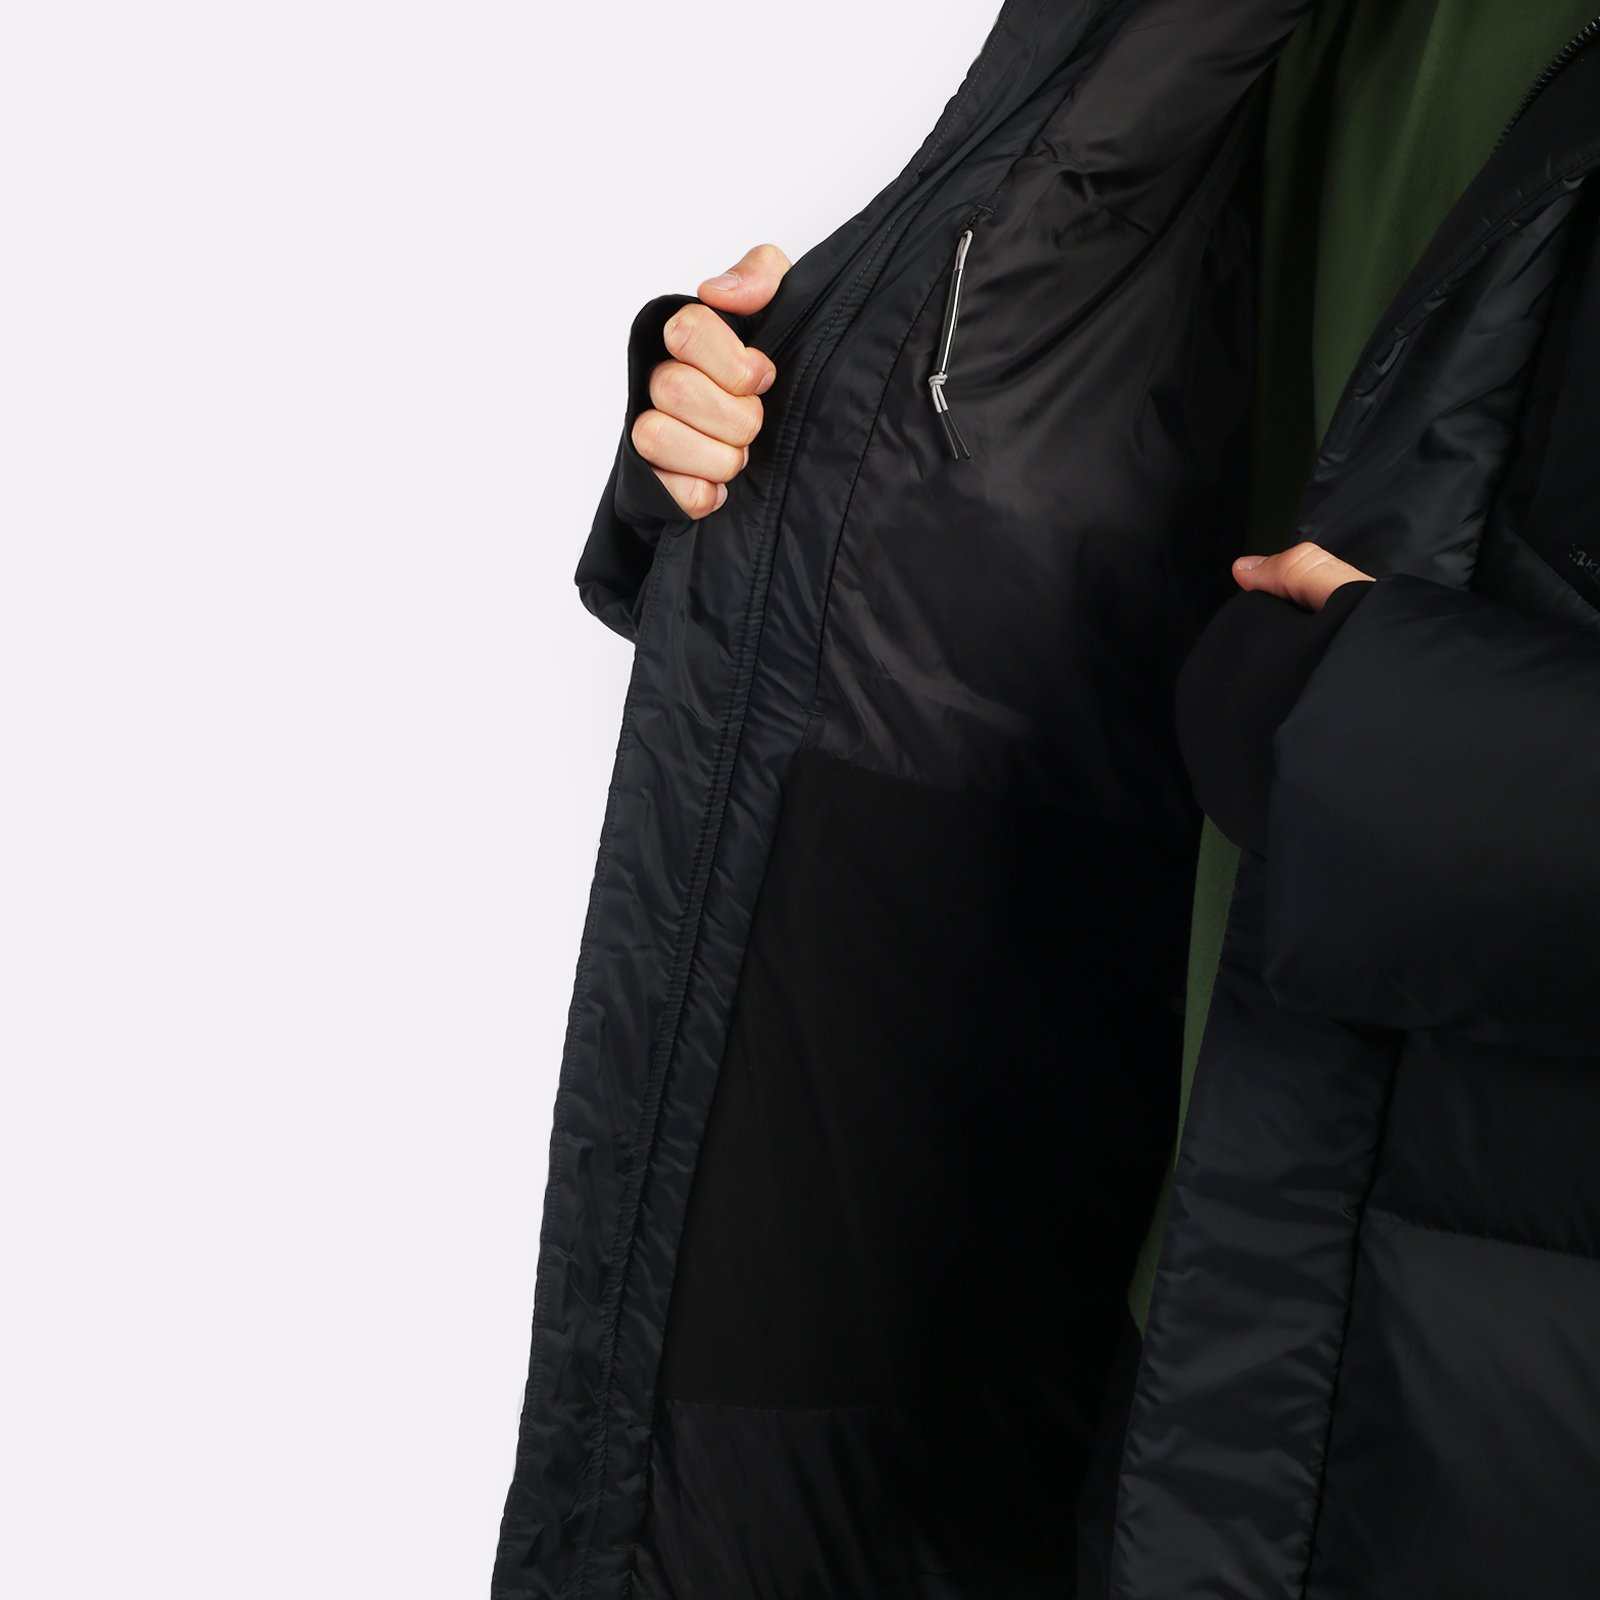 мужская черная куртка KRAKATAU Aitken Qm437-1-черный - цена, описание, фото 5